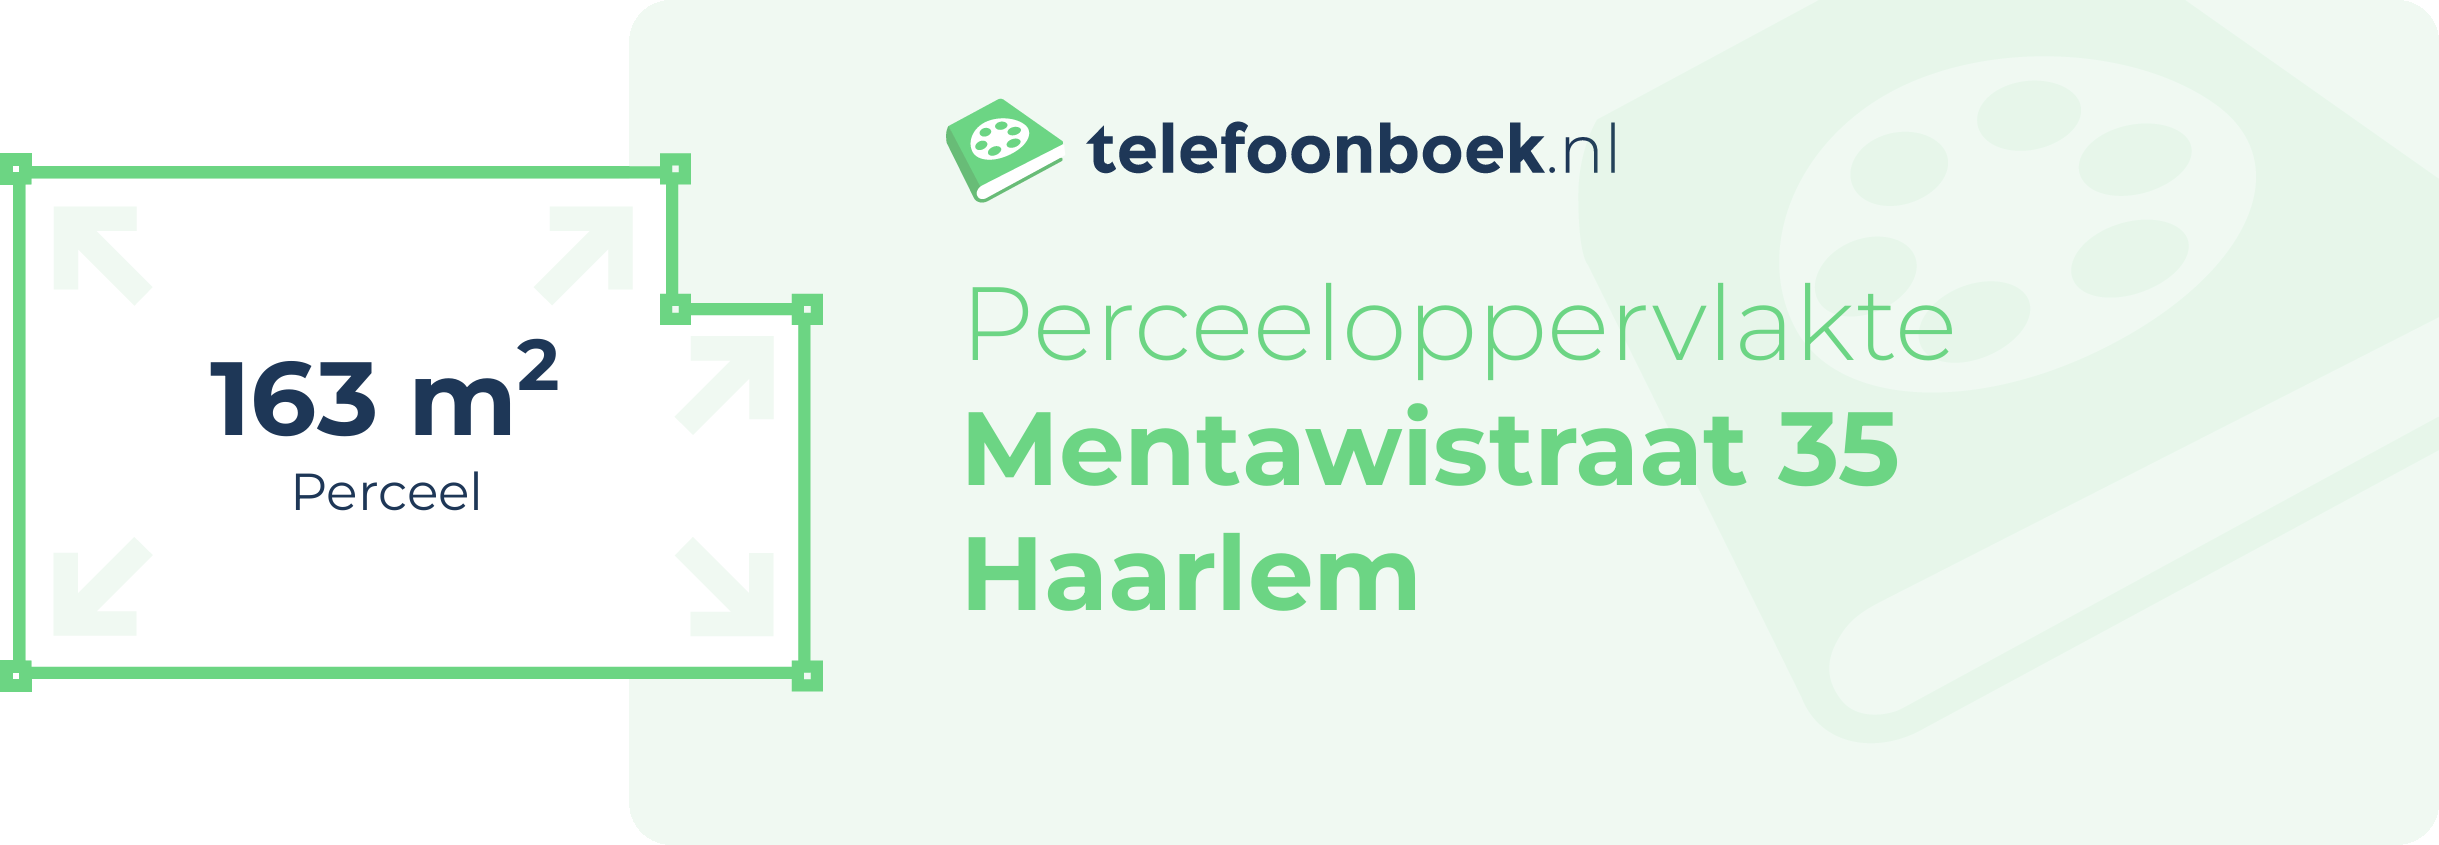 Perceeloppervlakte Mentawistraat 35 Haarlem